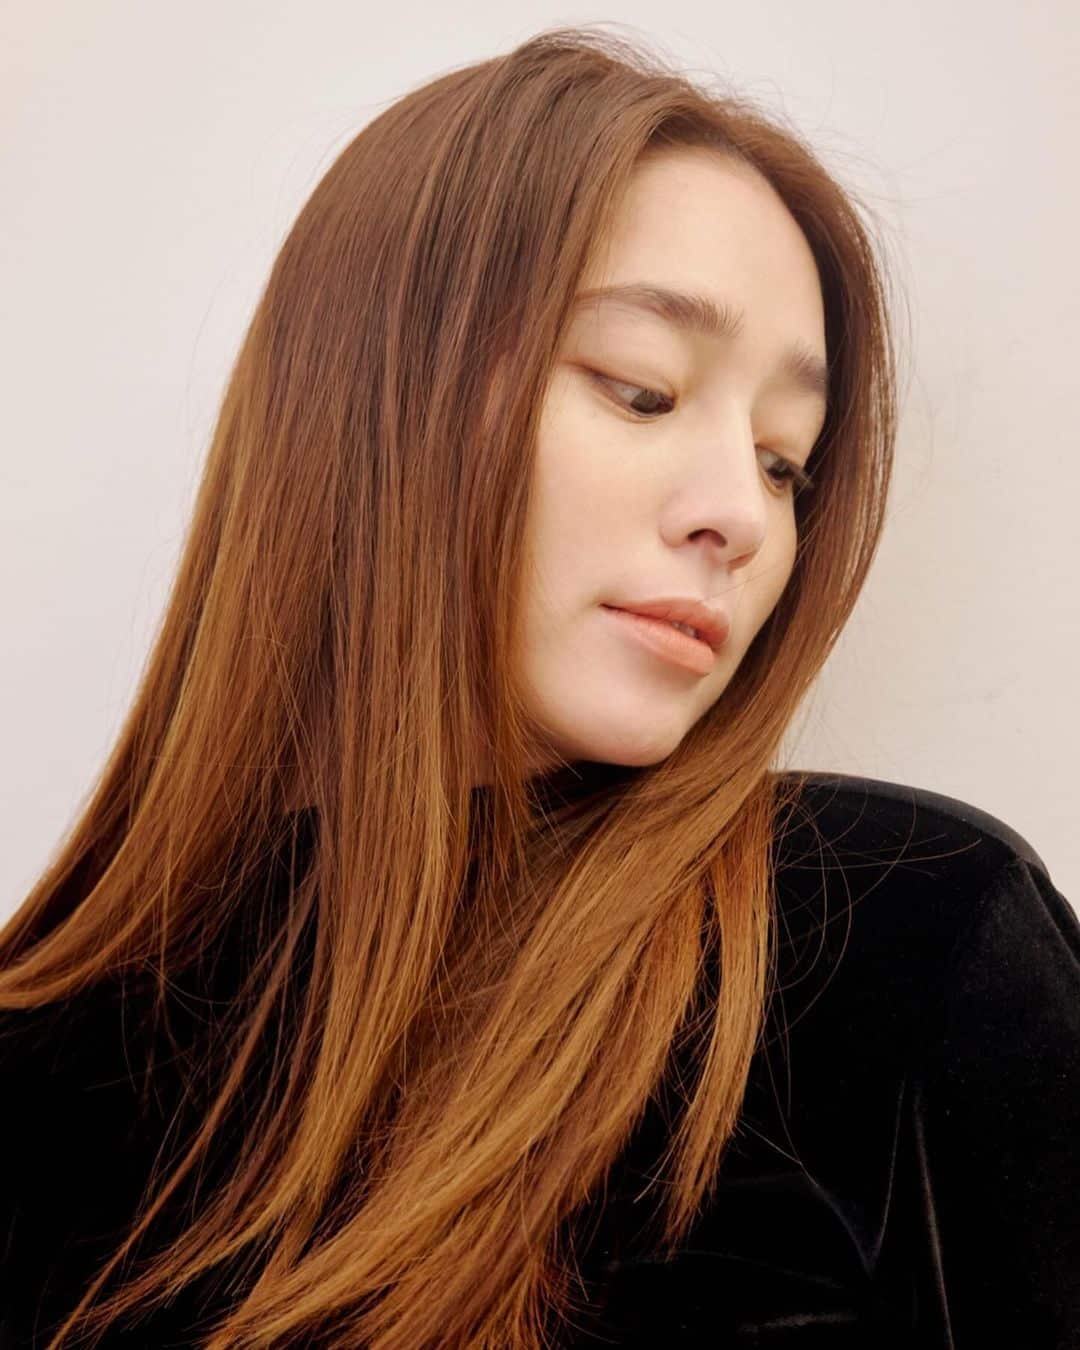 Актриса Ли Мин Джон демонстрирует классическую красоту на новых профайл-фото